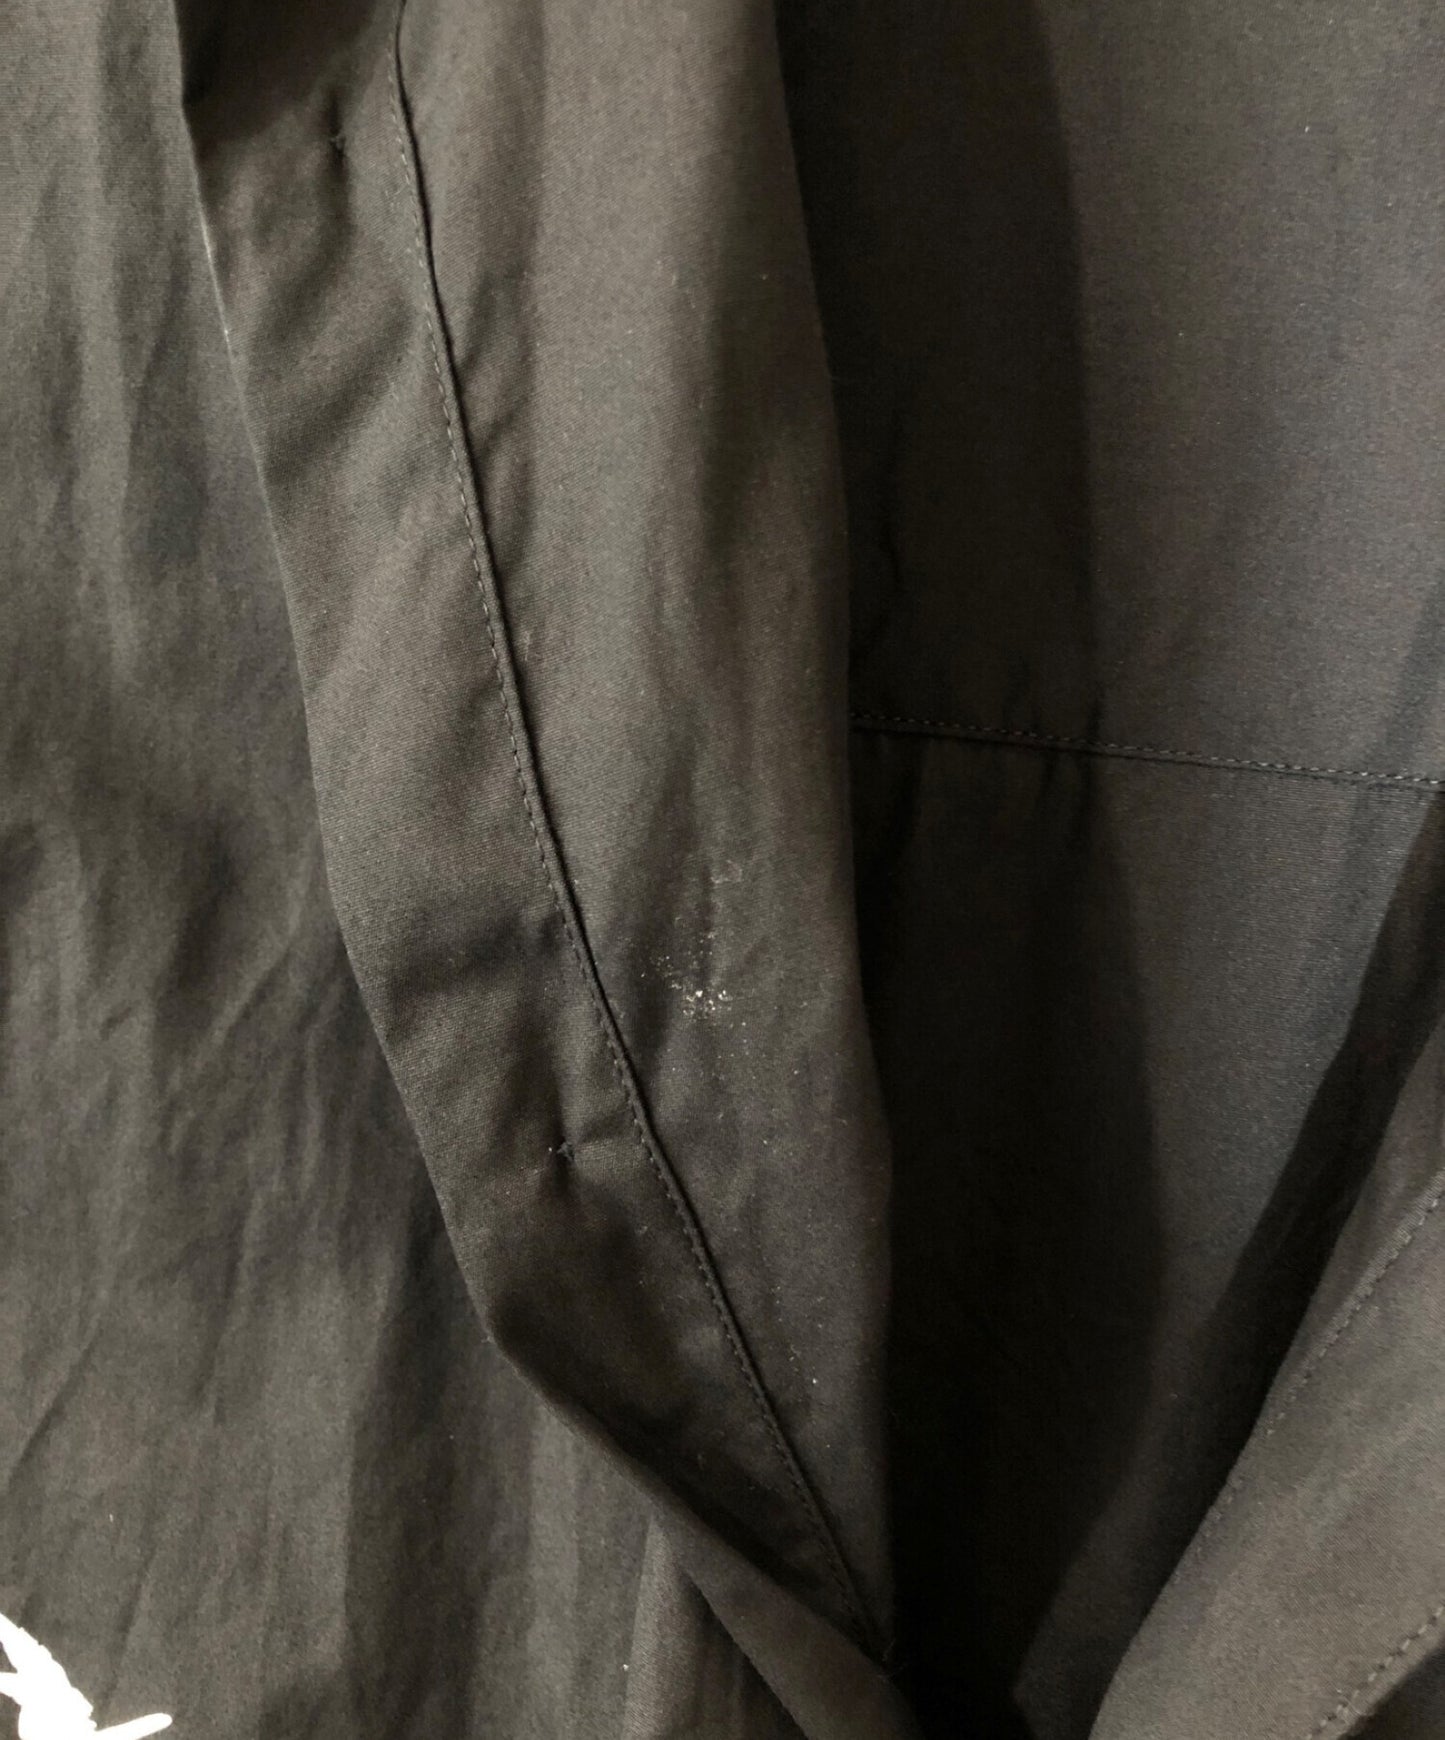 Y的棉布印刷粘合项领子laket脱衣的上衣YZ-B15-514